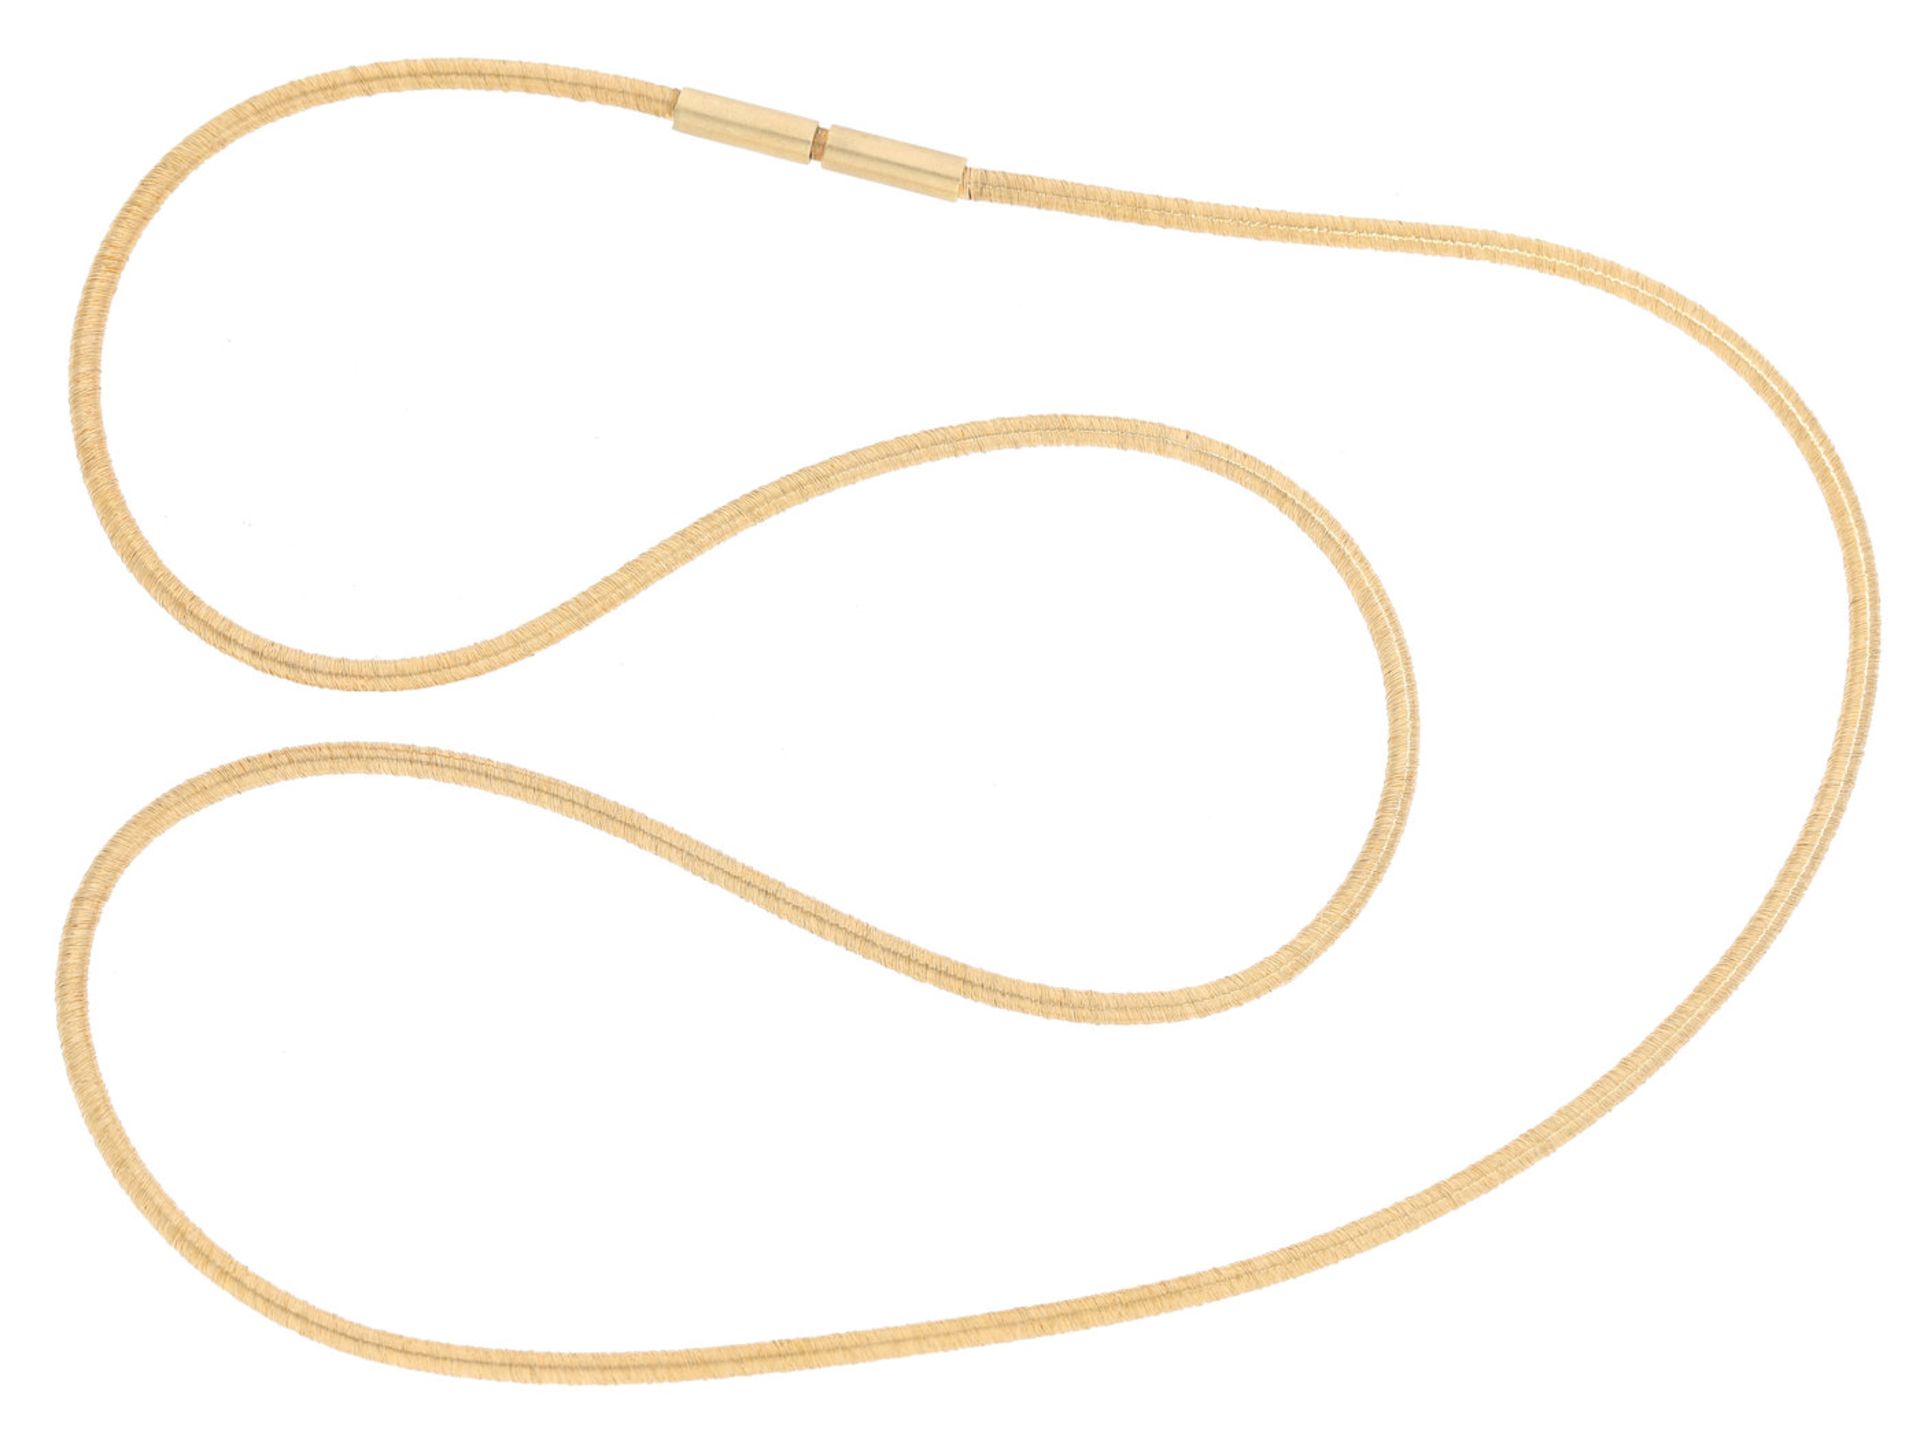 Kette/Collier: hochwertige und aufwändig gefertigte Collierkette, Handarbeit, 18K GoldCa. 45cm lang,